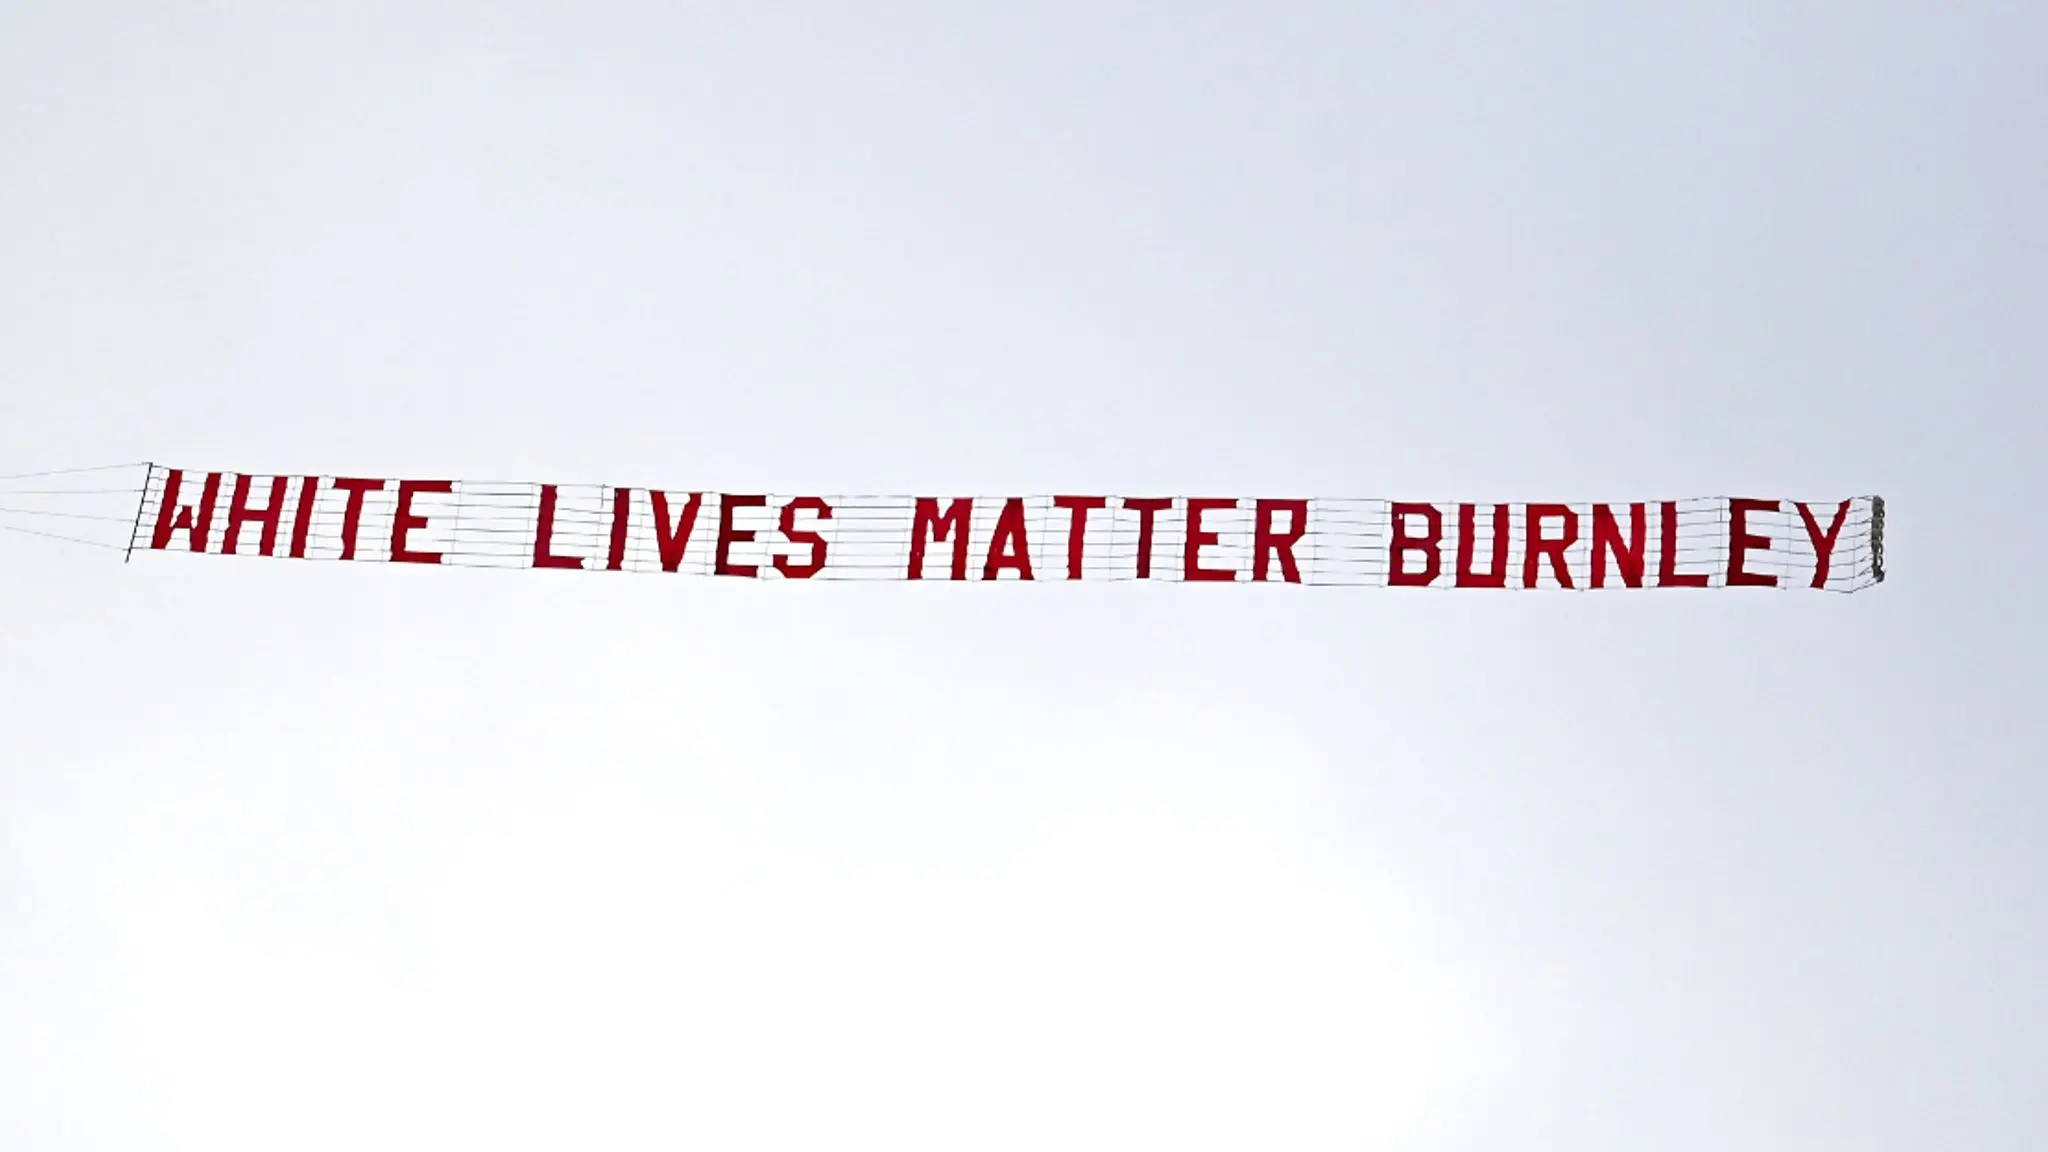 Une banderole “White Lives Matter Burnley” a survolé le stade de City lundi soir